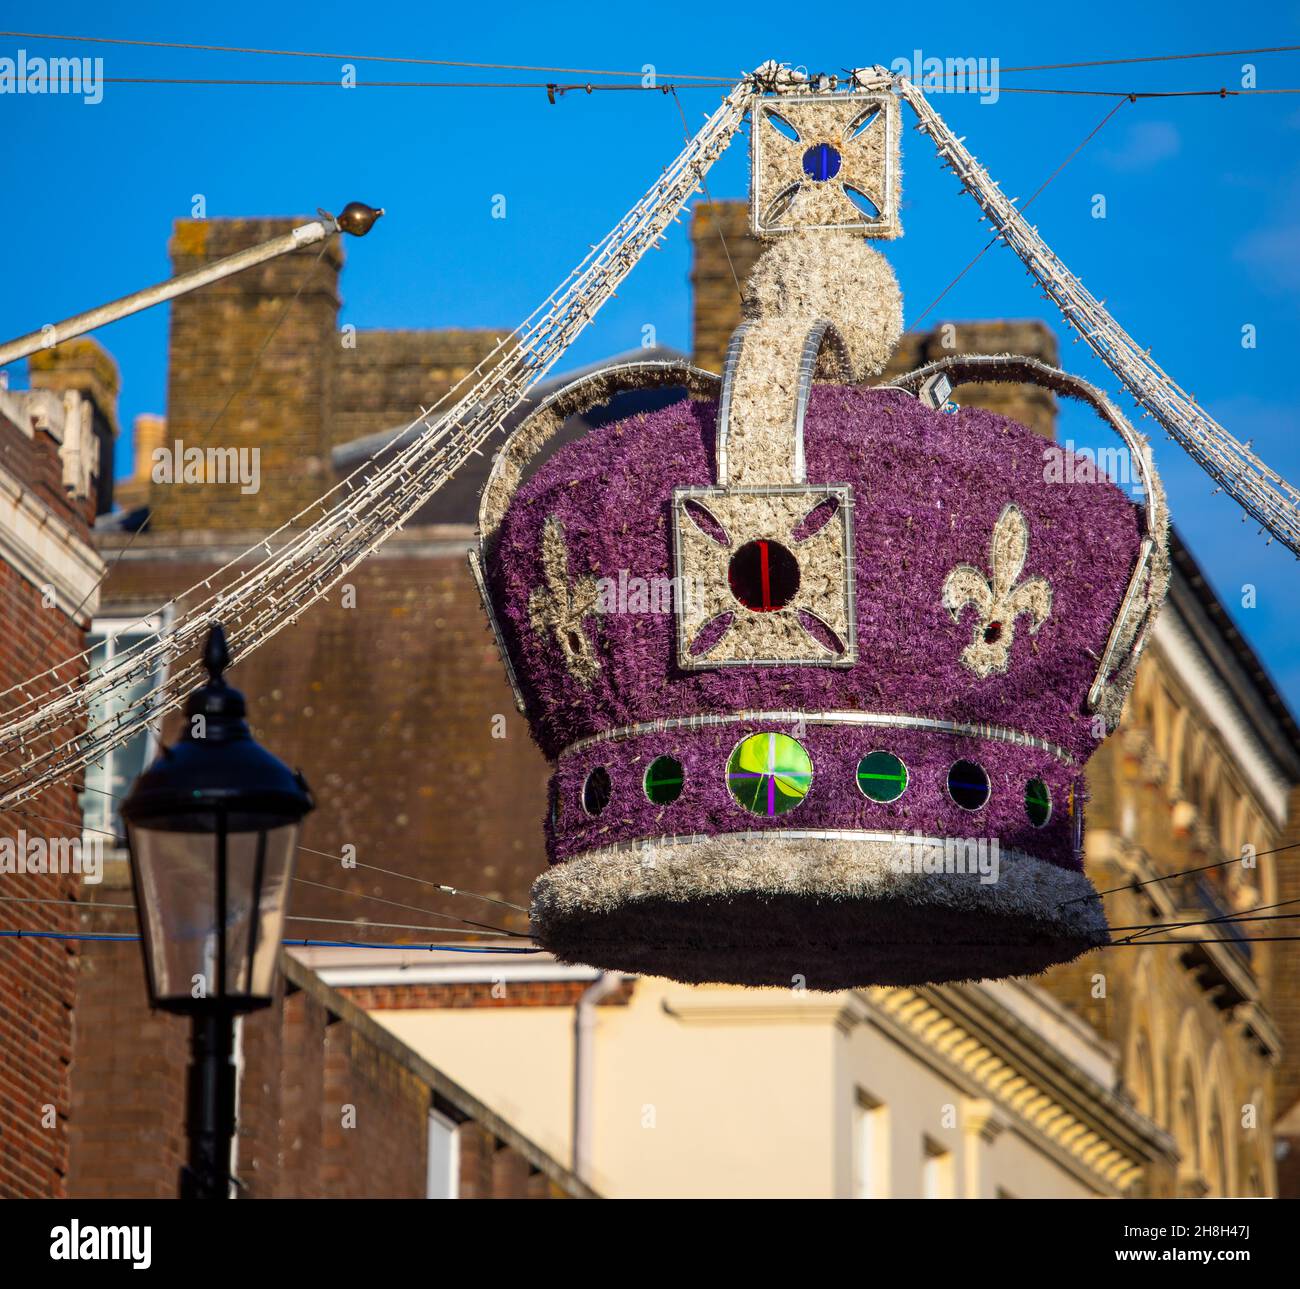 Gros plan d'une décoration de Noël de la couronne royale dans le centre-ville de Windsor dans le Berkshire, au Royaume-Uni. Banque D'Images